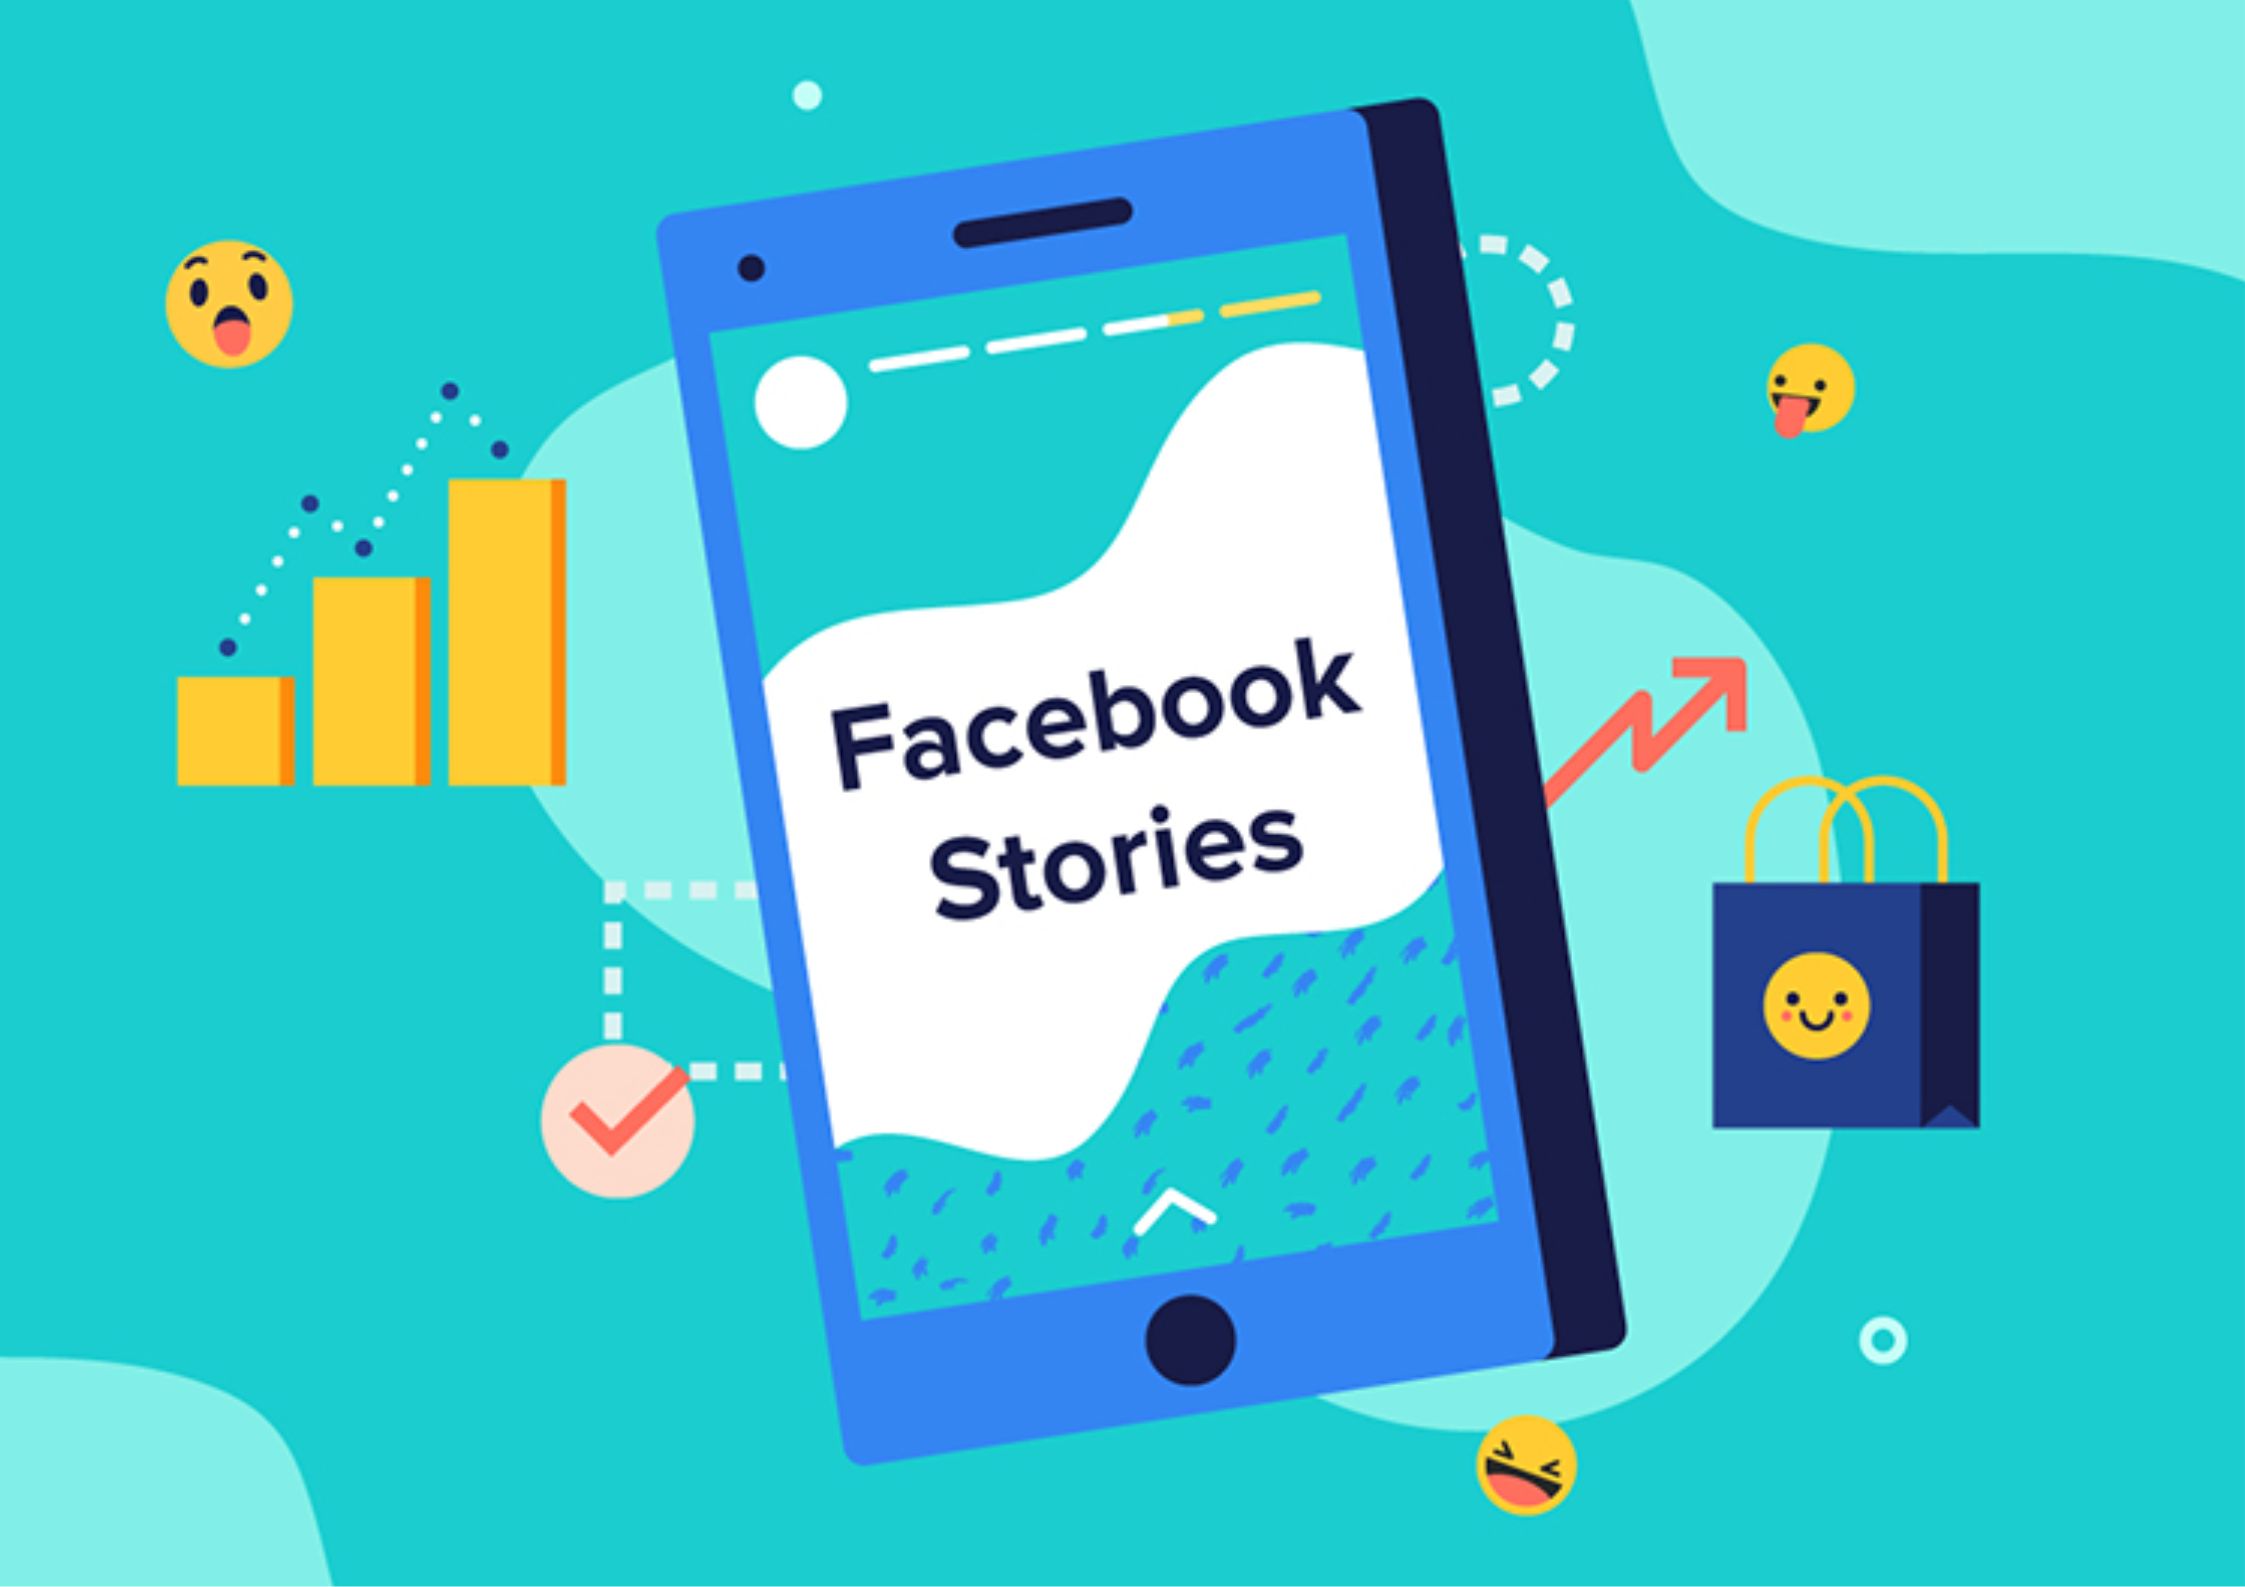 Áp dụng “Theo dõi và đánh giá” kết quả của Story trên Facebook để hiểu rõ hơn về hiệu quả của chiến dịch